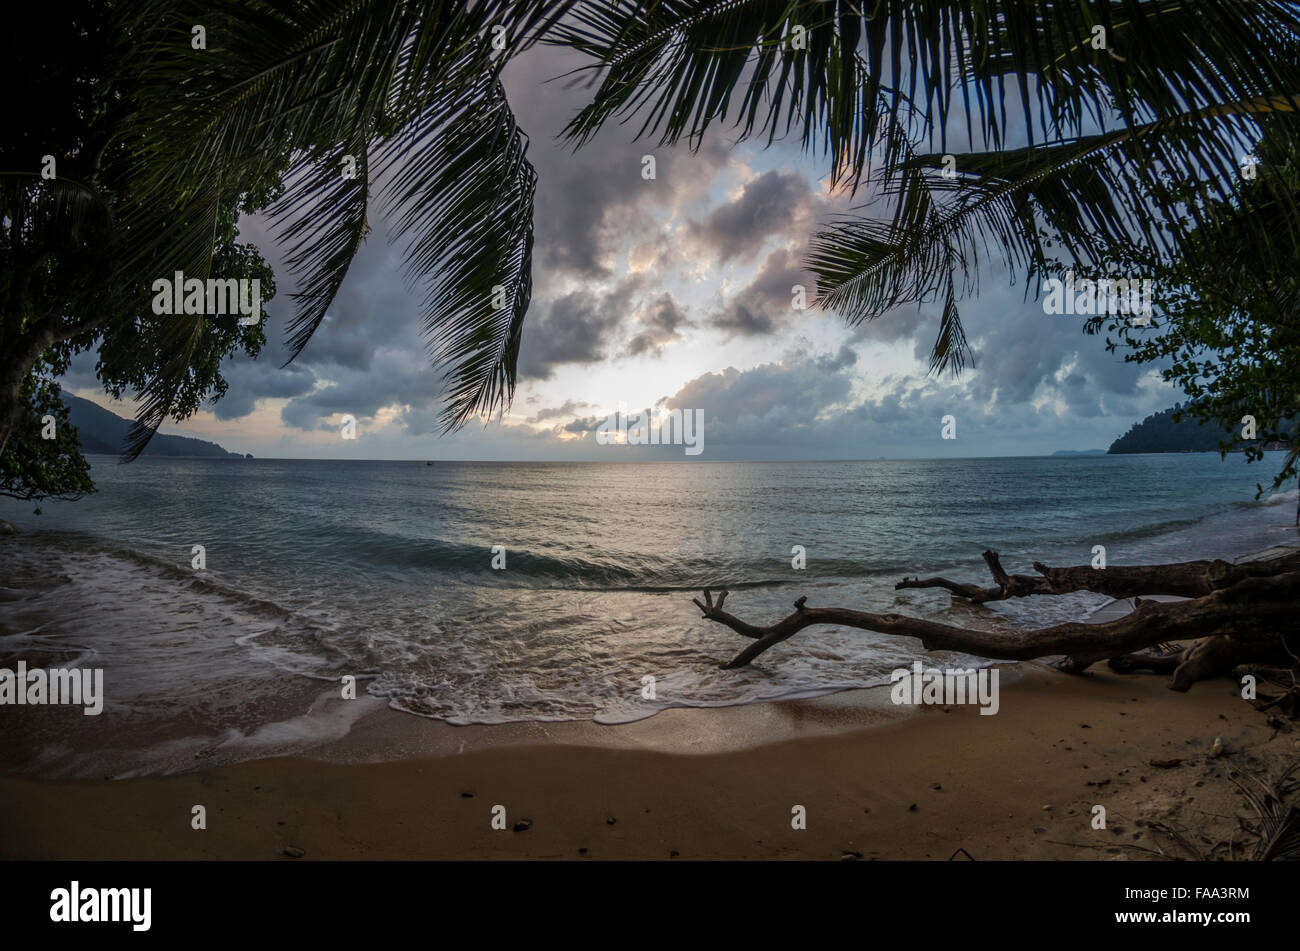 Beach in Tioman Island in Malaysia Stock Photo